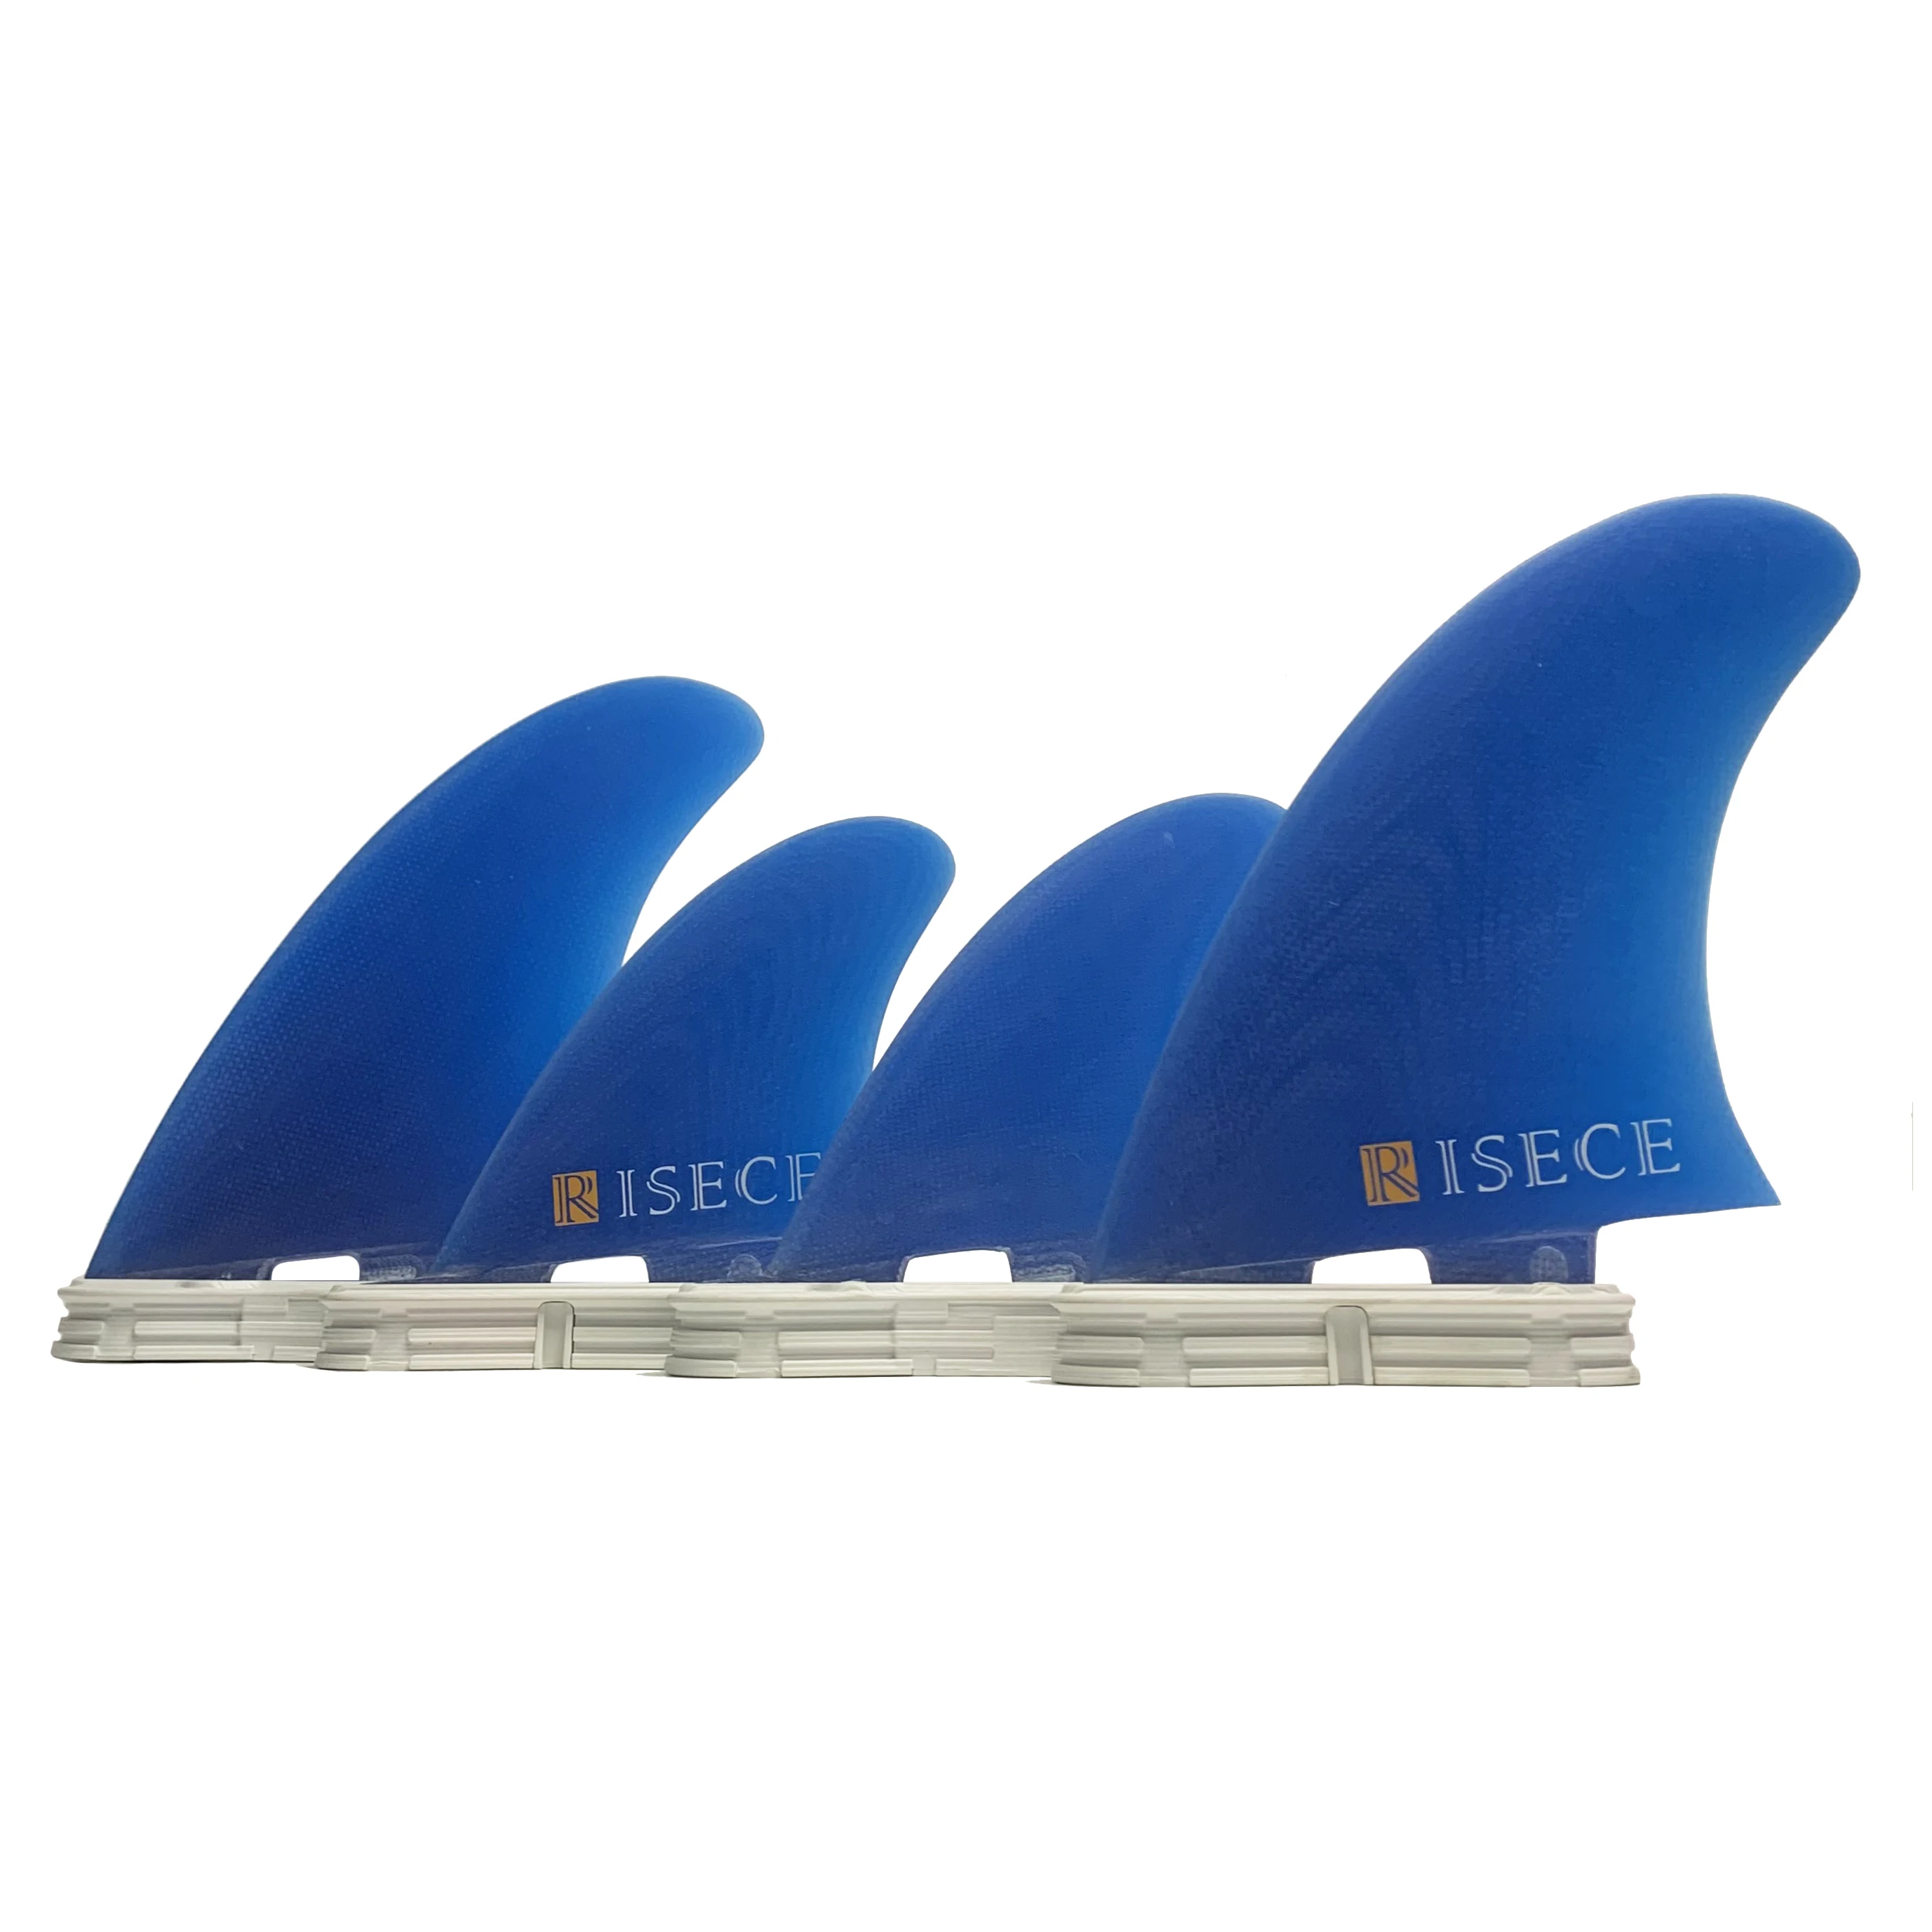 RISECE FCS 2 Четырехлопастные Плавники для доски для серфинга из Стекловолокна GFK Fiberglass Quad Surfboard Fin Single Tab Синие Плавники Из Стекловолокна 4 Штуки Quad Set